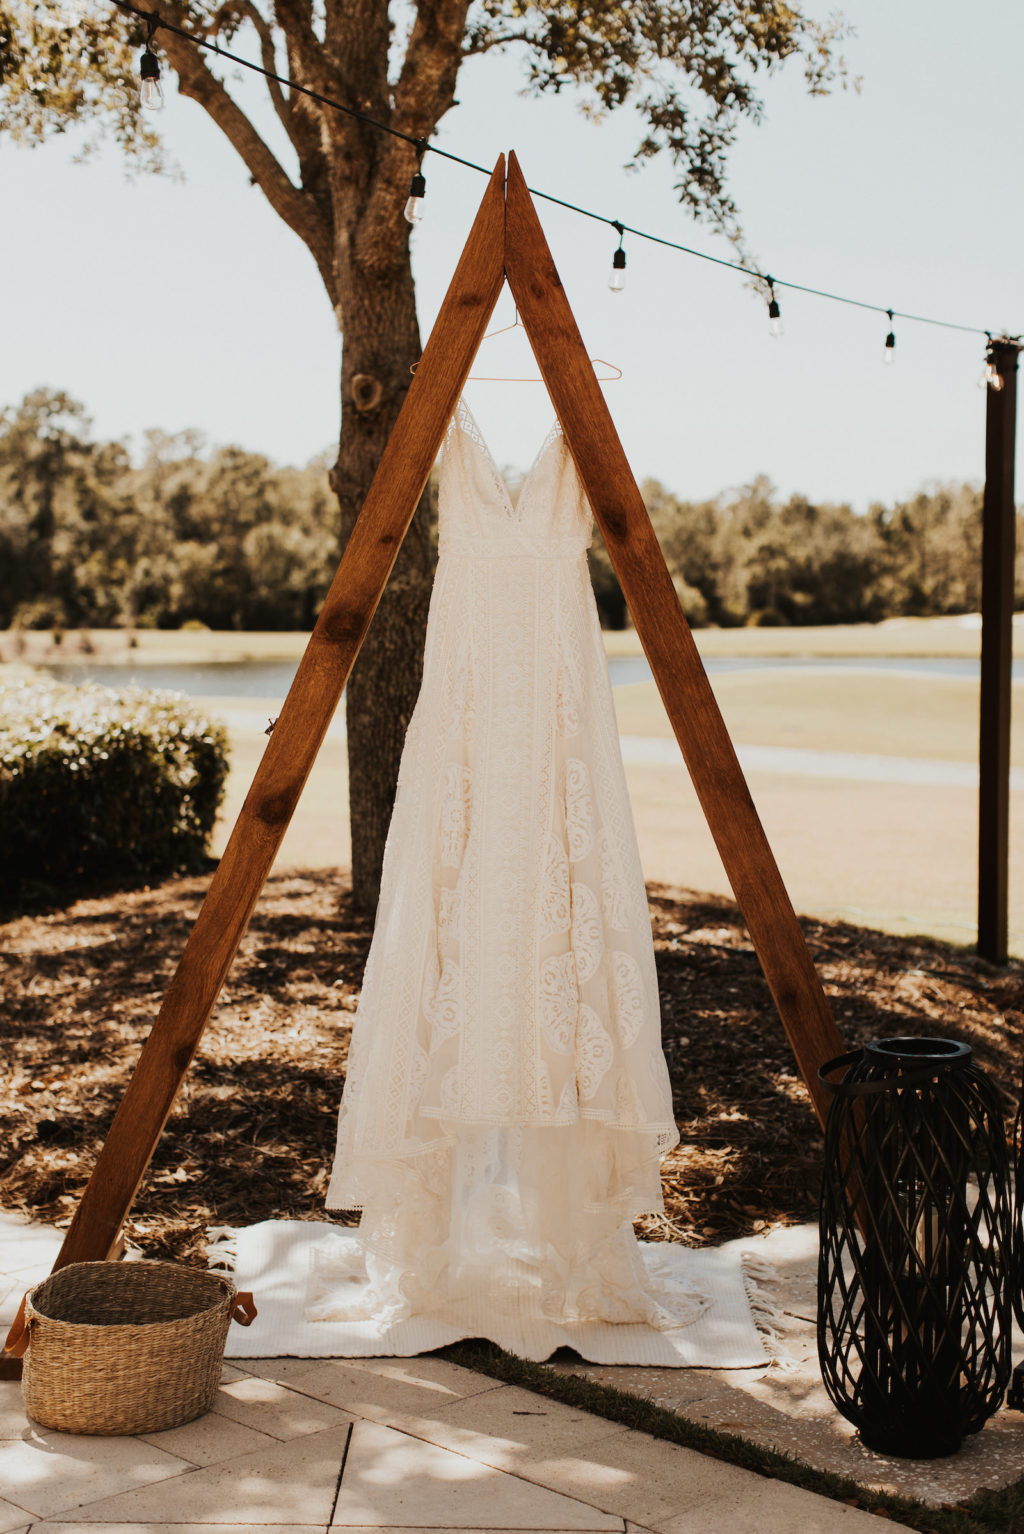 Romantic Flowy Lace Wedding Dress Hanging on Wooden Triangular Arch | Bradenton Wedding Venue The Concession Golf Club